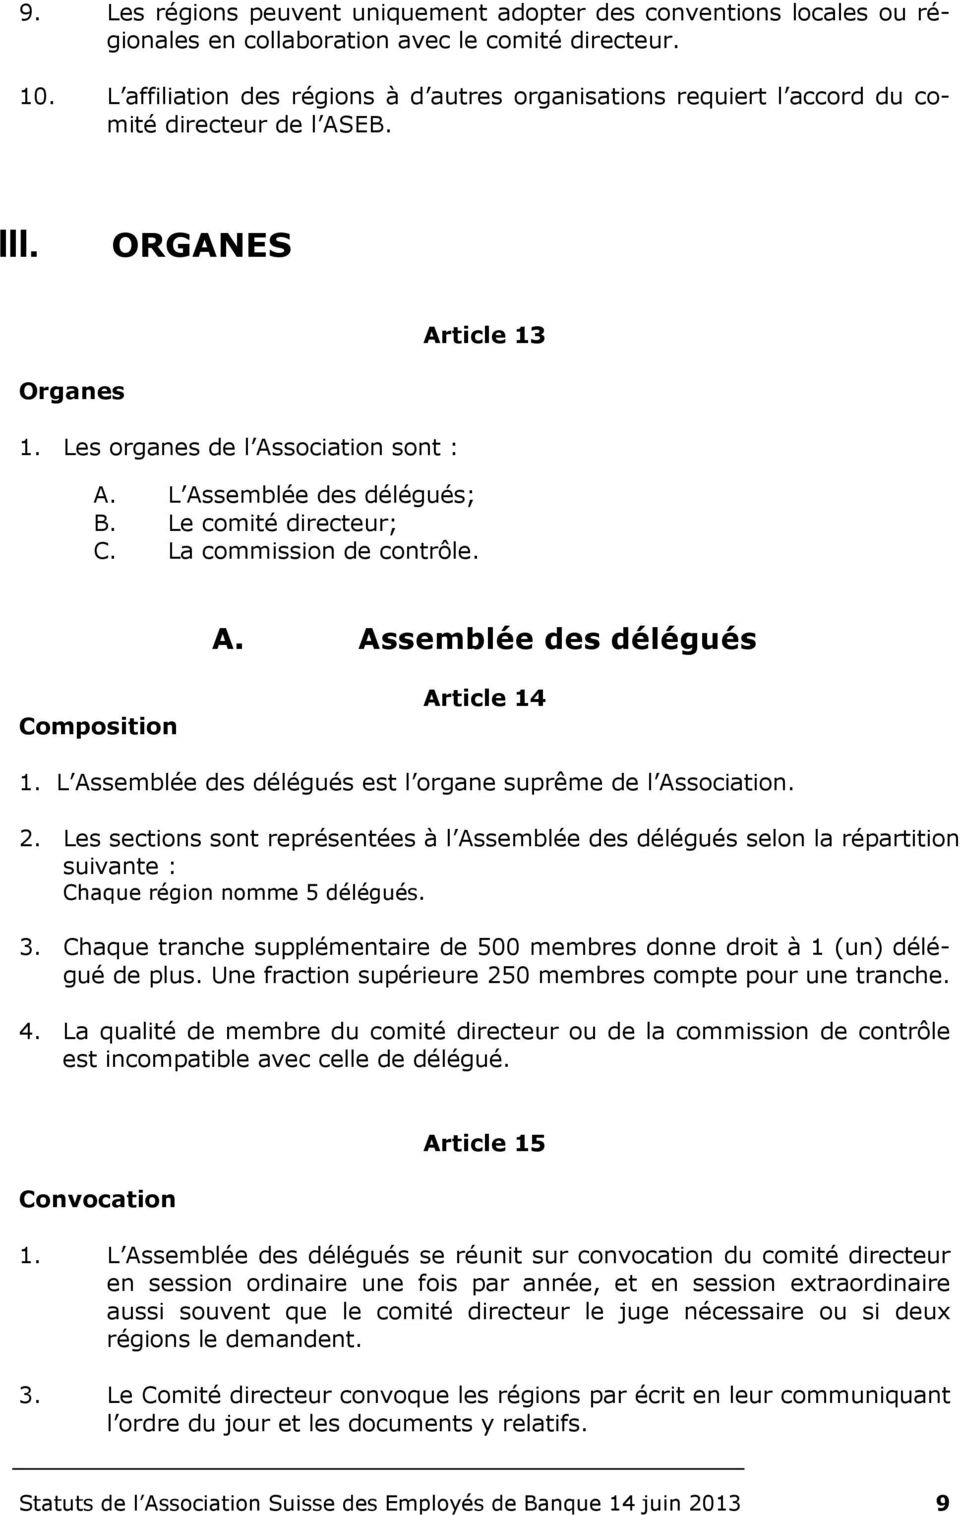 L Assemblée des délégués; B. Le comité directeur; C. La commission de contrôle. A. Assemblée des délégués Composition Article 14 1. L Assemblée des délégués est l organe suprême de l Association. 2.